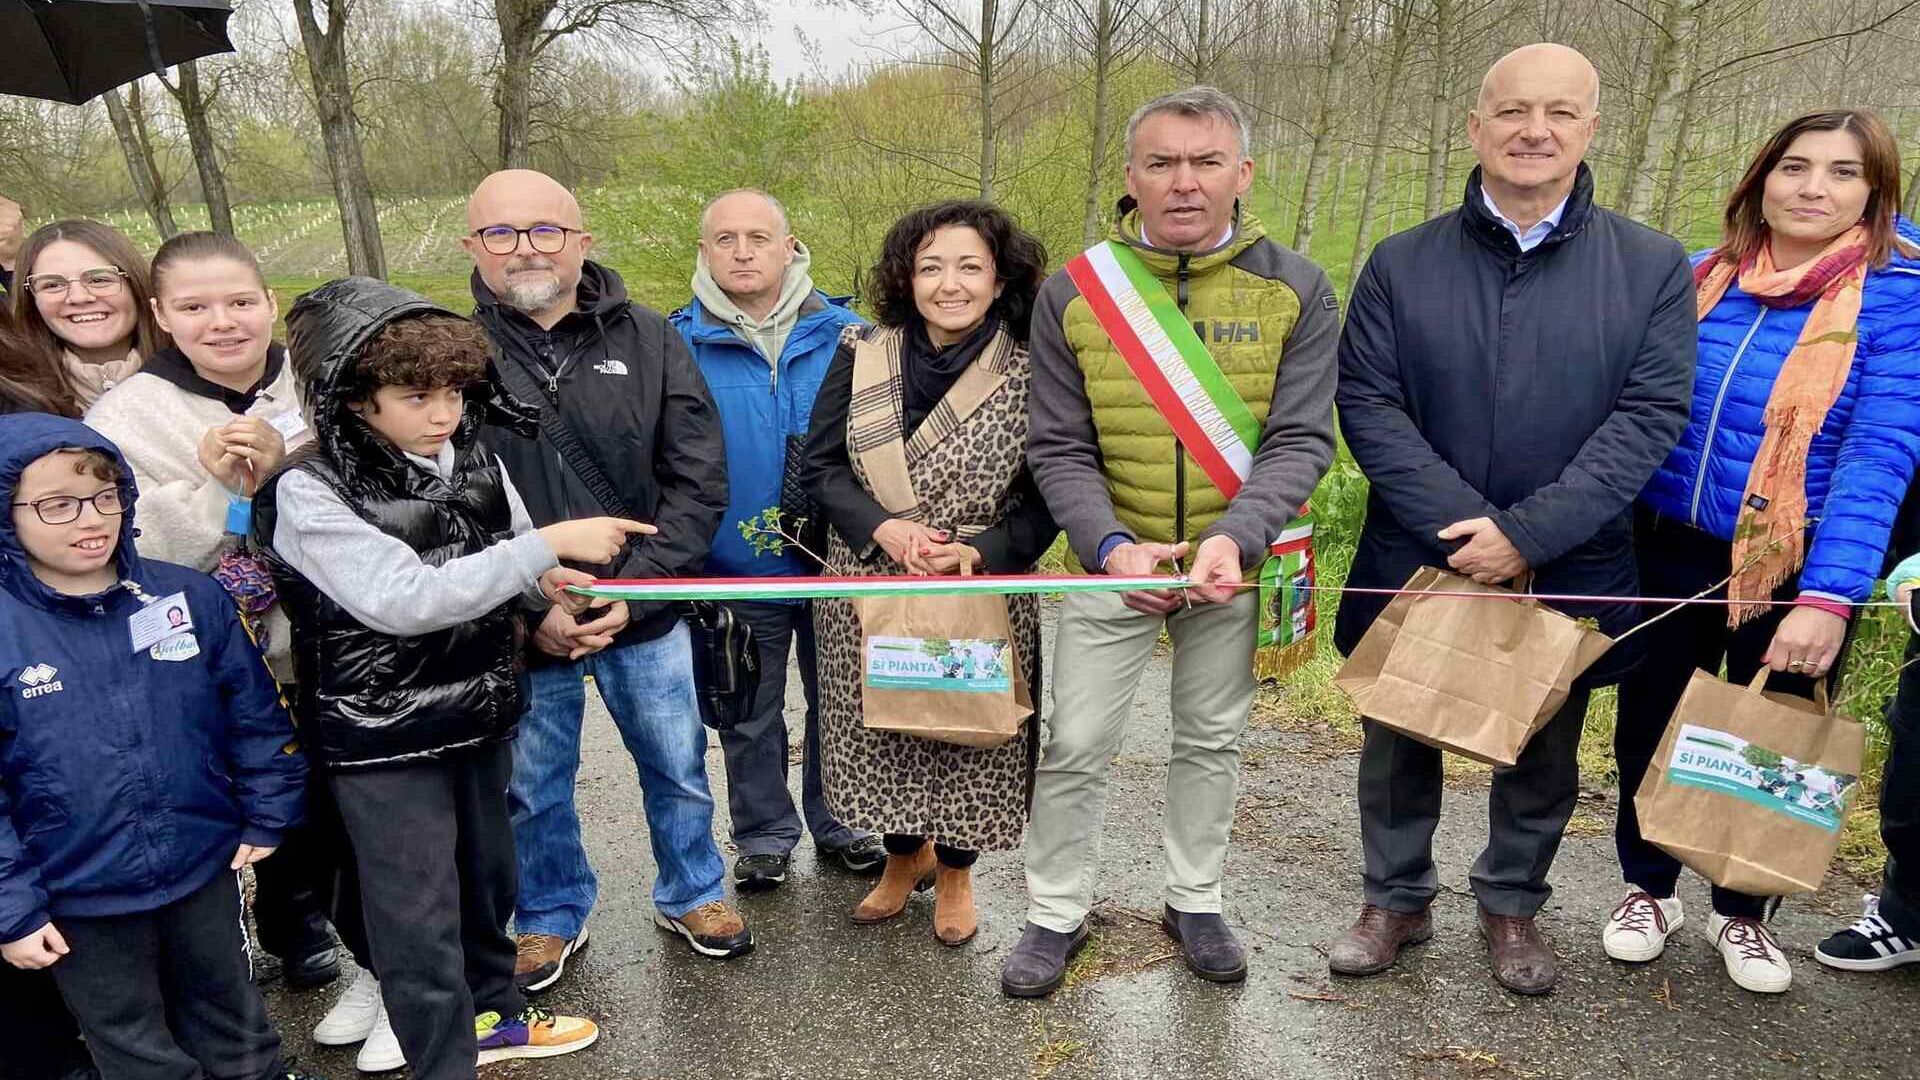 Städtische Wiederaufforstung: In Sissa Trecasali (Parma) wurden zwei neue stadtnahe Wälder für 1084 Bäume und Sträucher und 9.000 Quadratmeter Fläche eingeweiht.